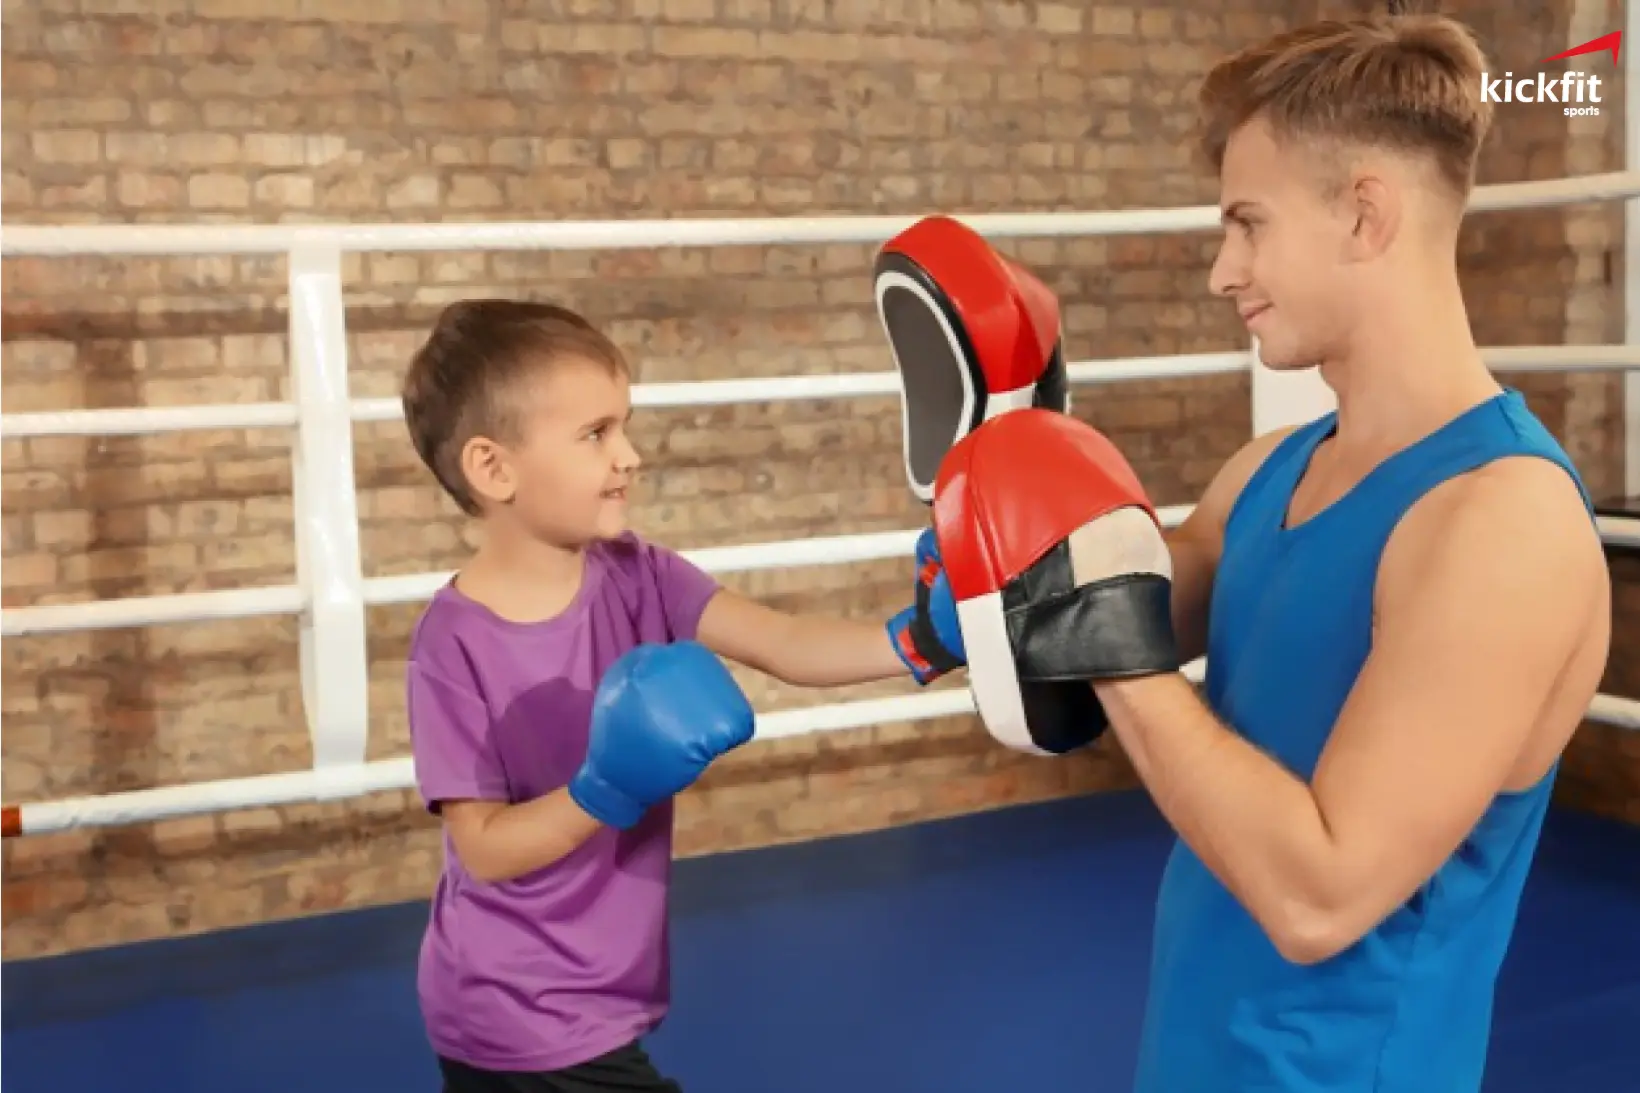 Khám phá 7 điều “thú vị” về lớp học võ thuật cho trẻ em tại Kickfit Sports